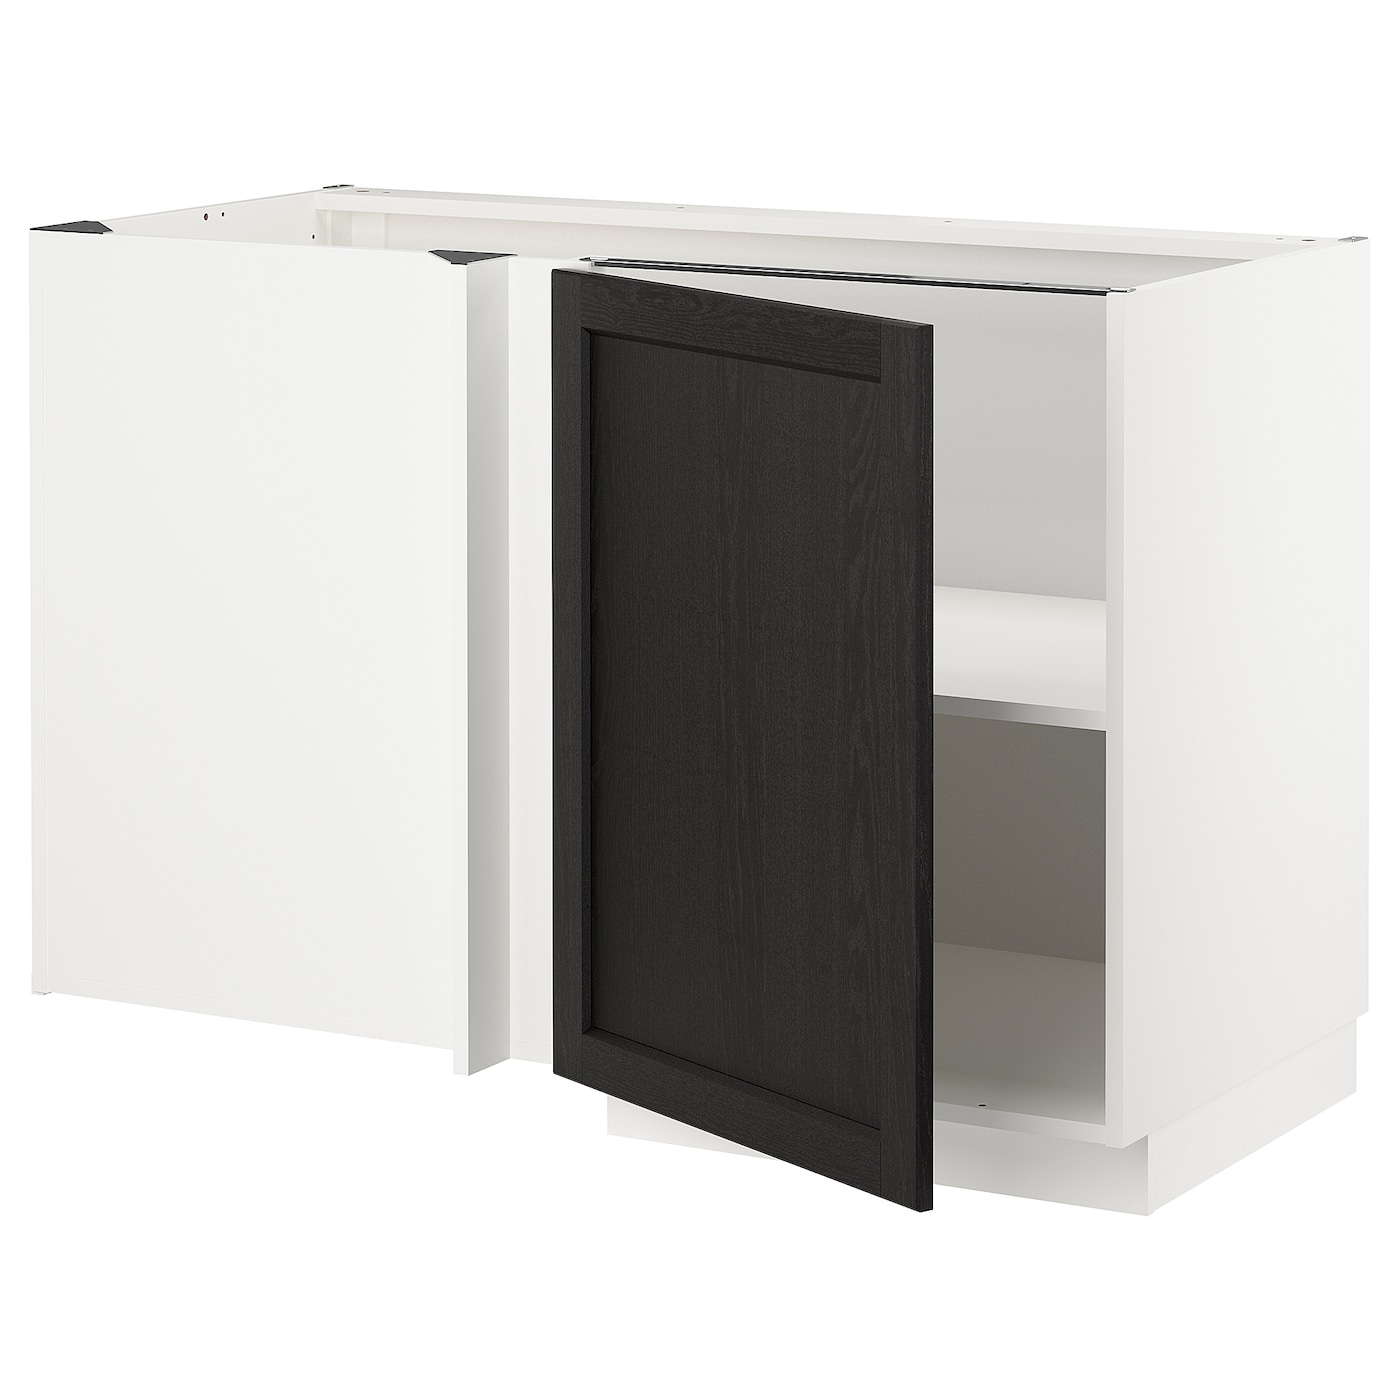 Напольный кухонный шкаф  - IKEA METOD, 88x67,5x127,5см, белый/черный, МЕТОД ИКЕА